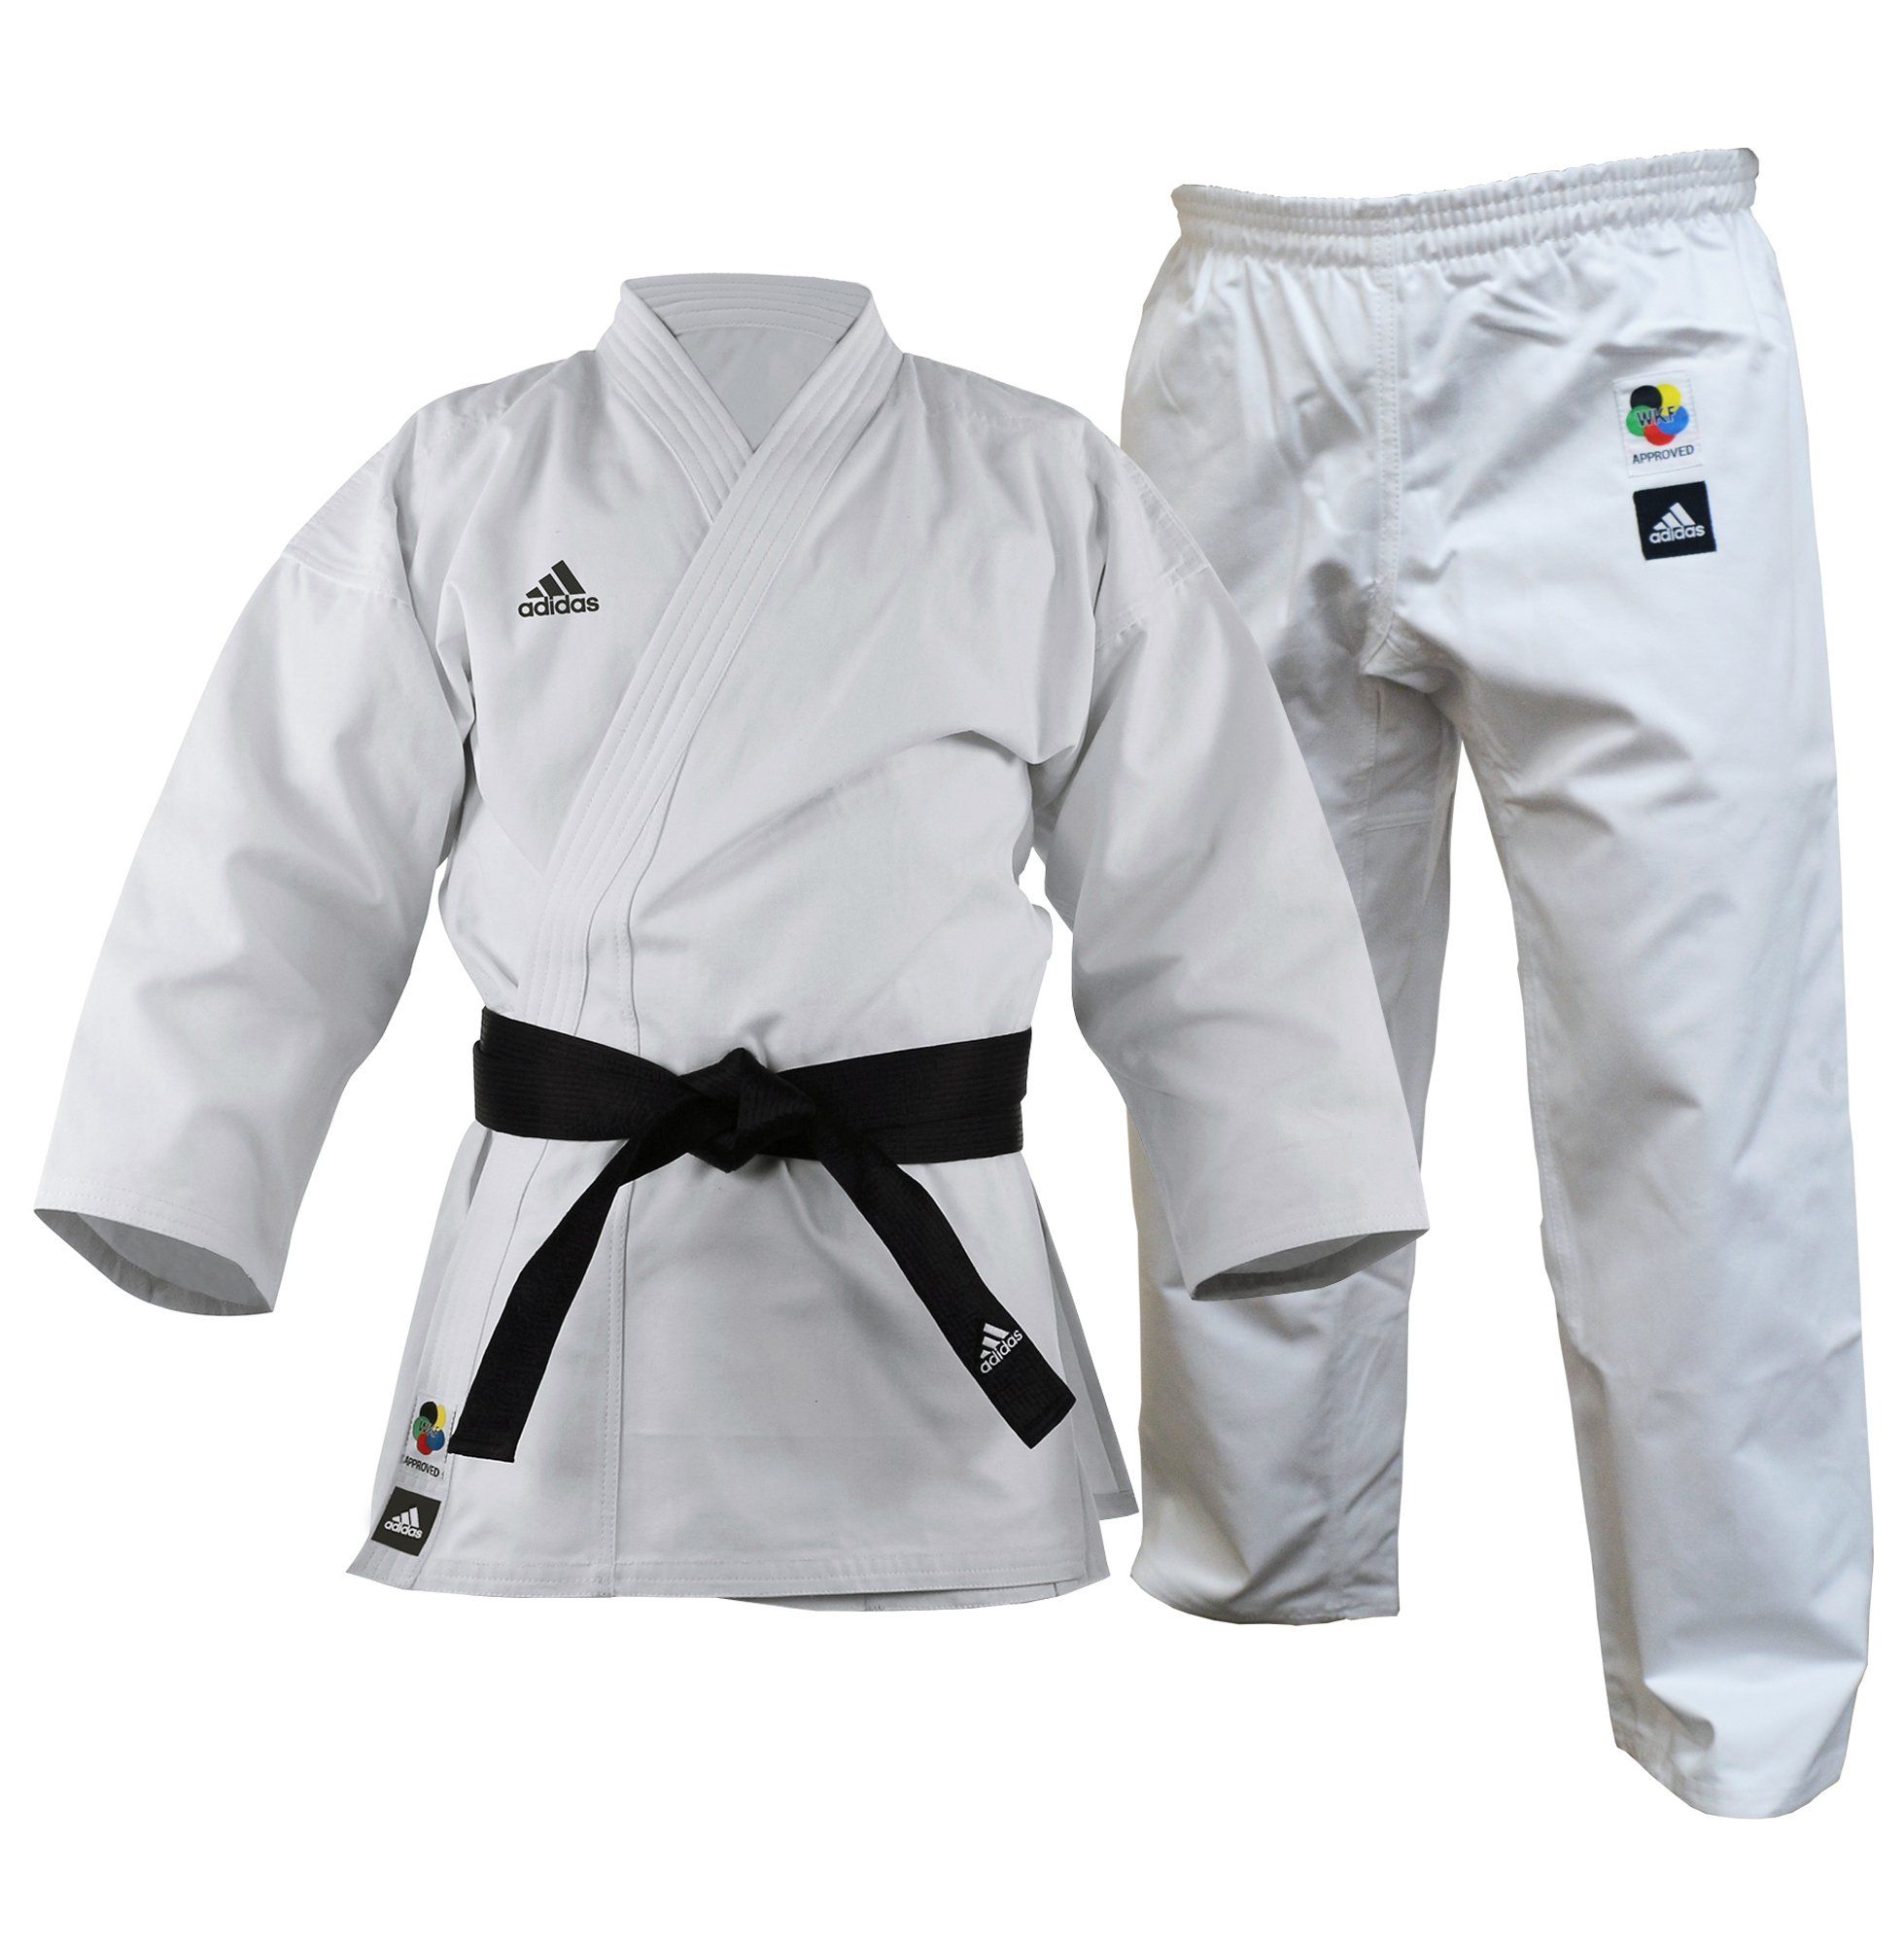 Adidas Karate Uniform Cut - 11oz